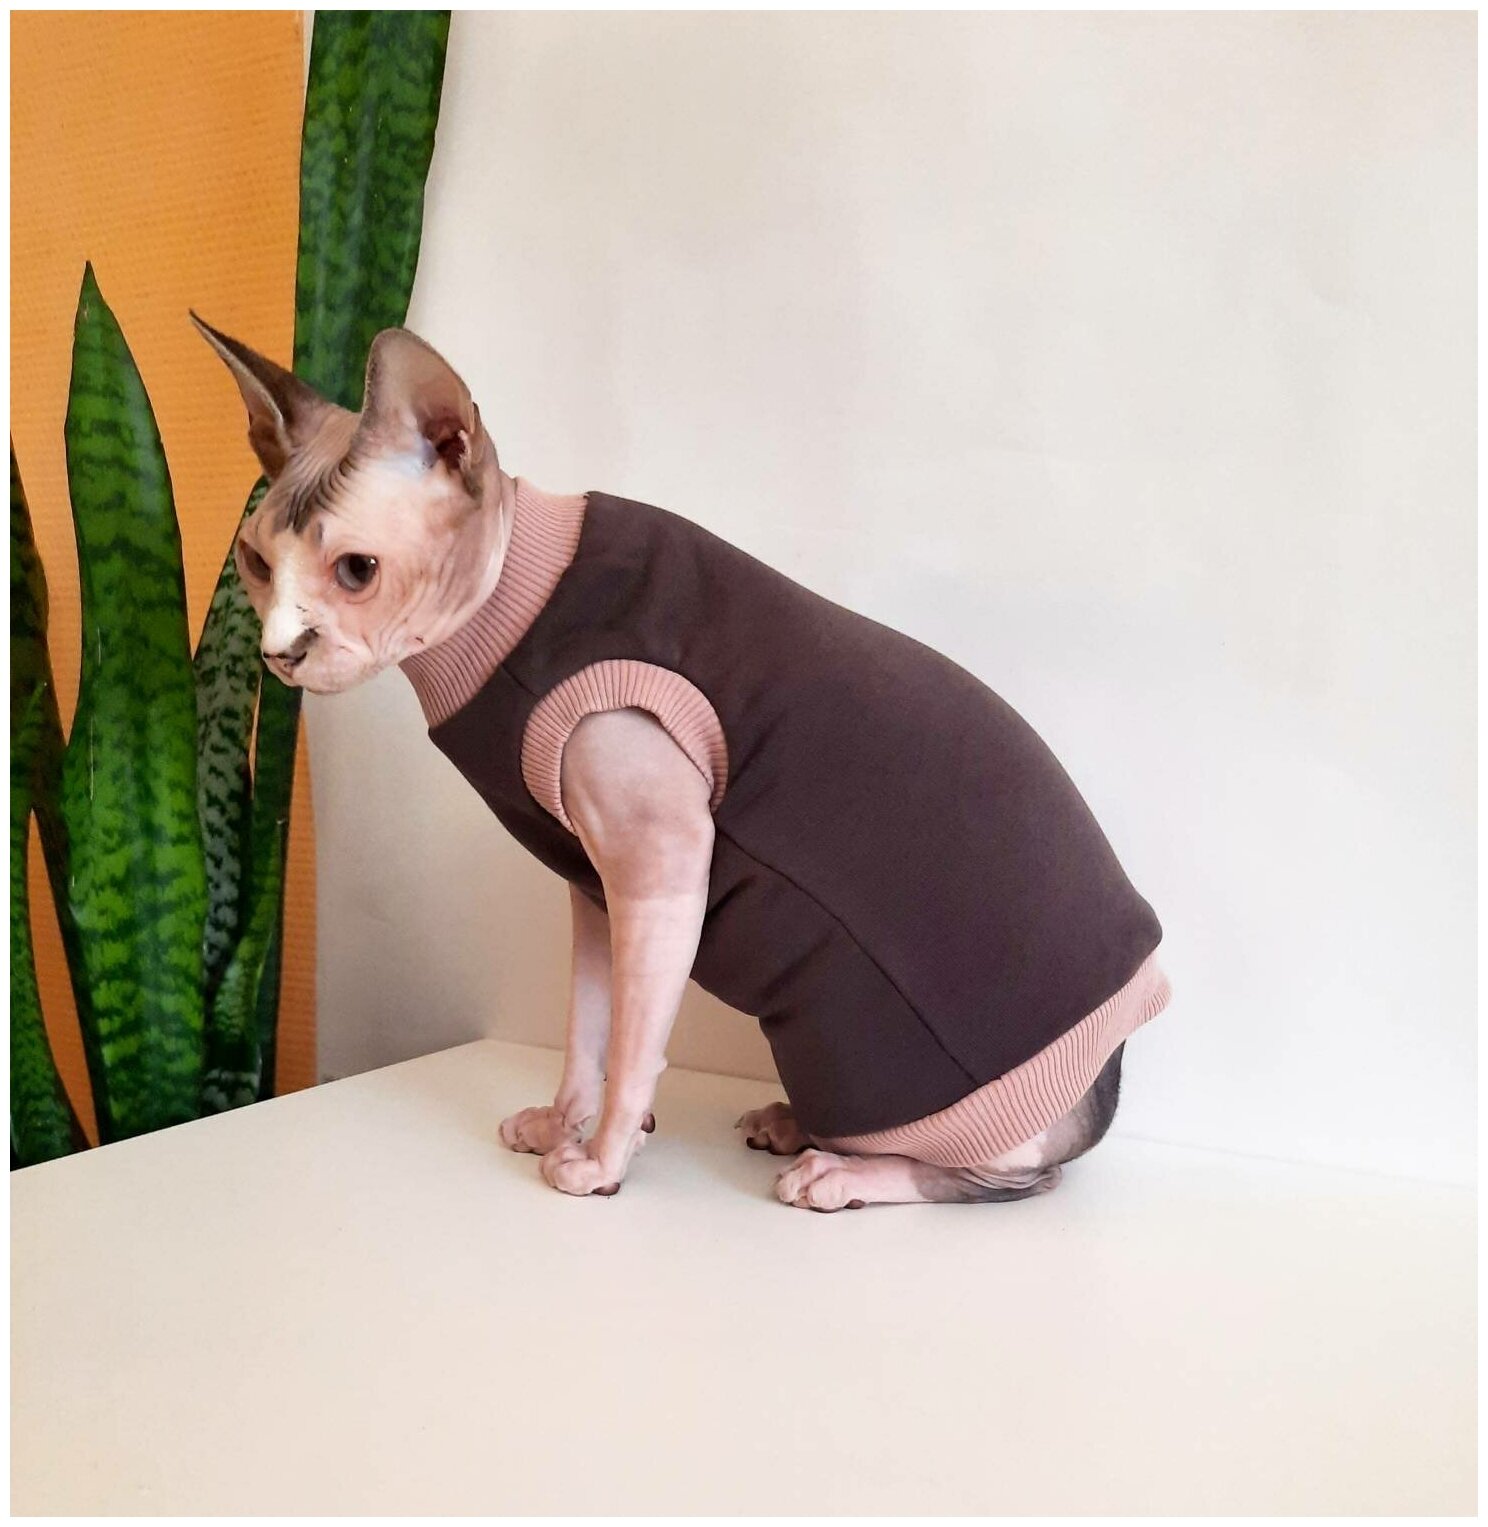 Свитшот для кошек, размер 35 (длина спины 35см), цвет шоколад+беж / толстовка свитшот свитер для кошек сфинкс / одежда для животных - фотография № 4